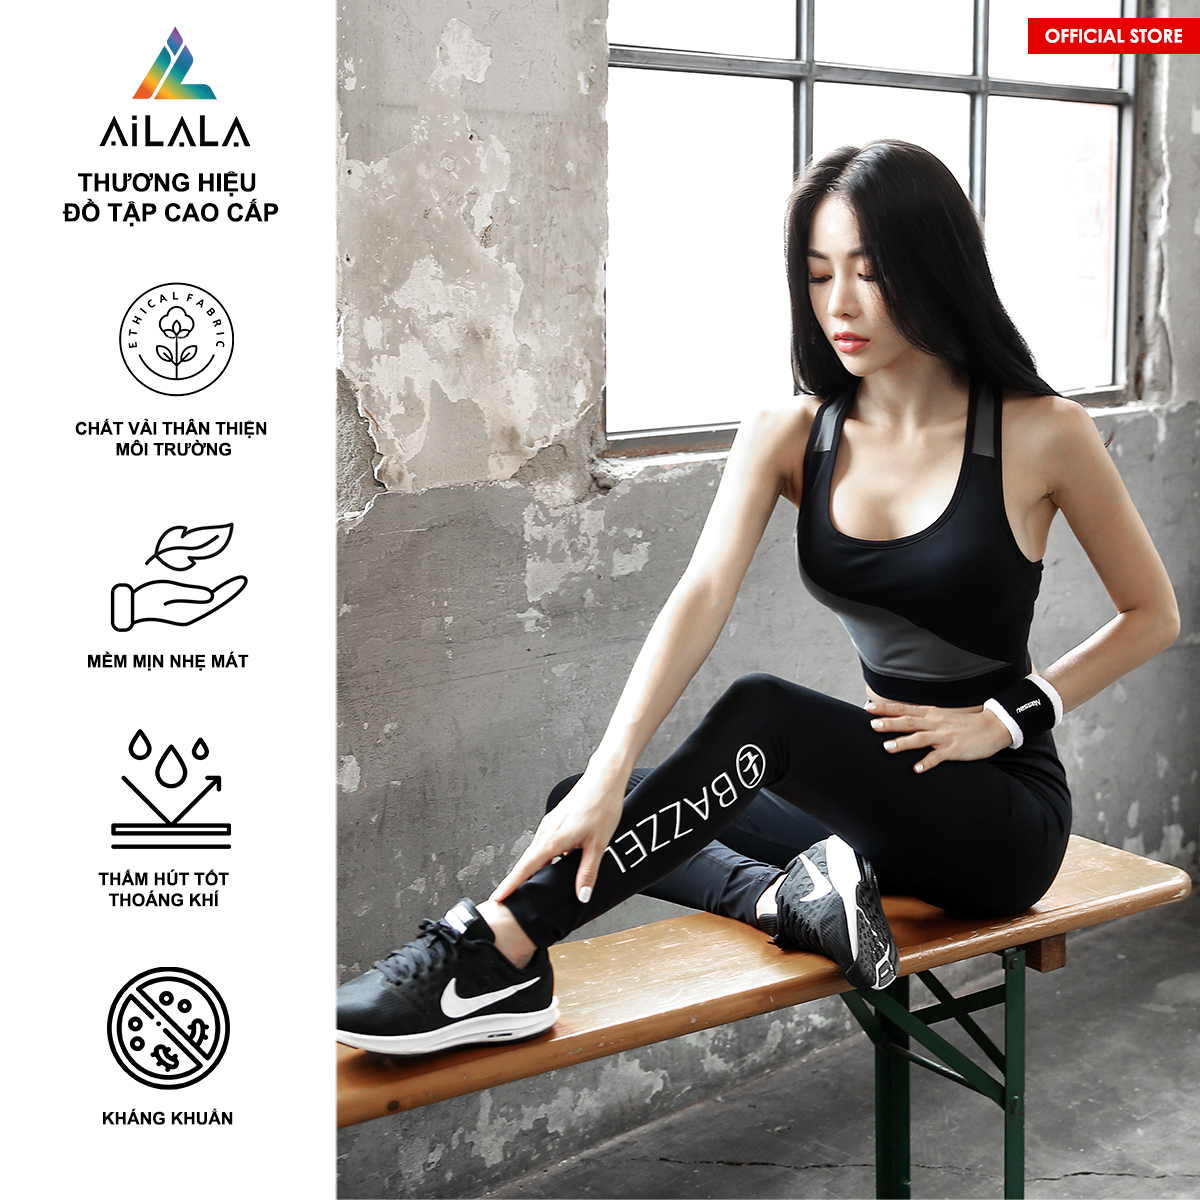 Bộ quần áo thể thao nữ AiLALA HK19, Đồ tập Yoga Gym Pilates, chất vải Hi-tech cao cấp